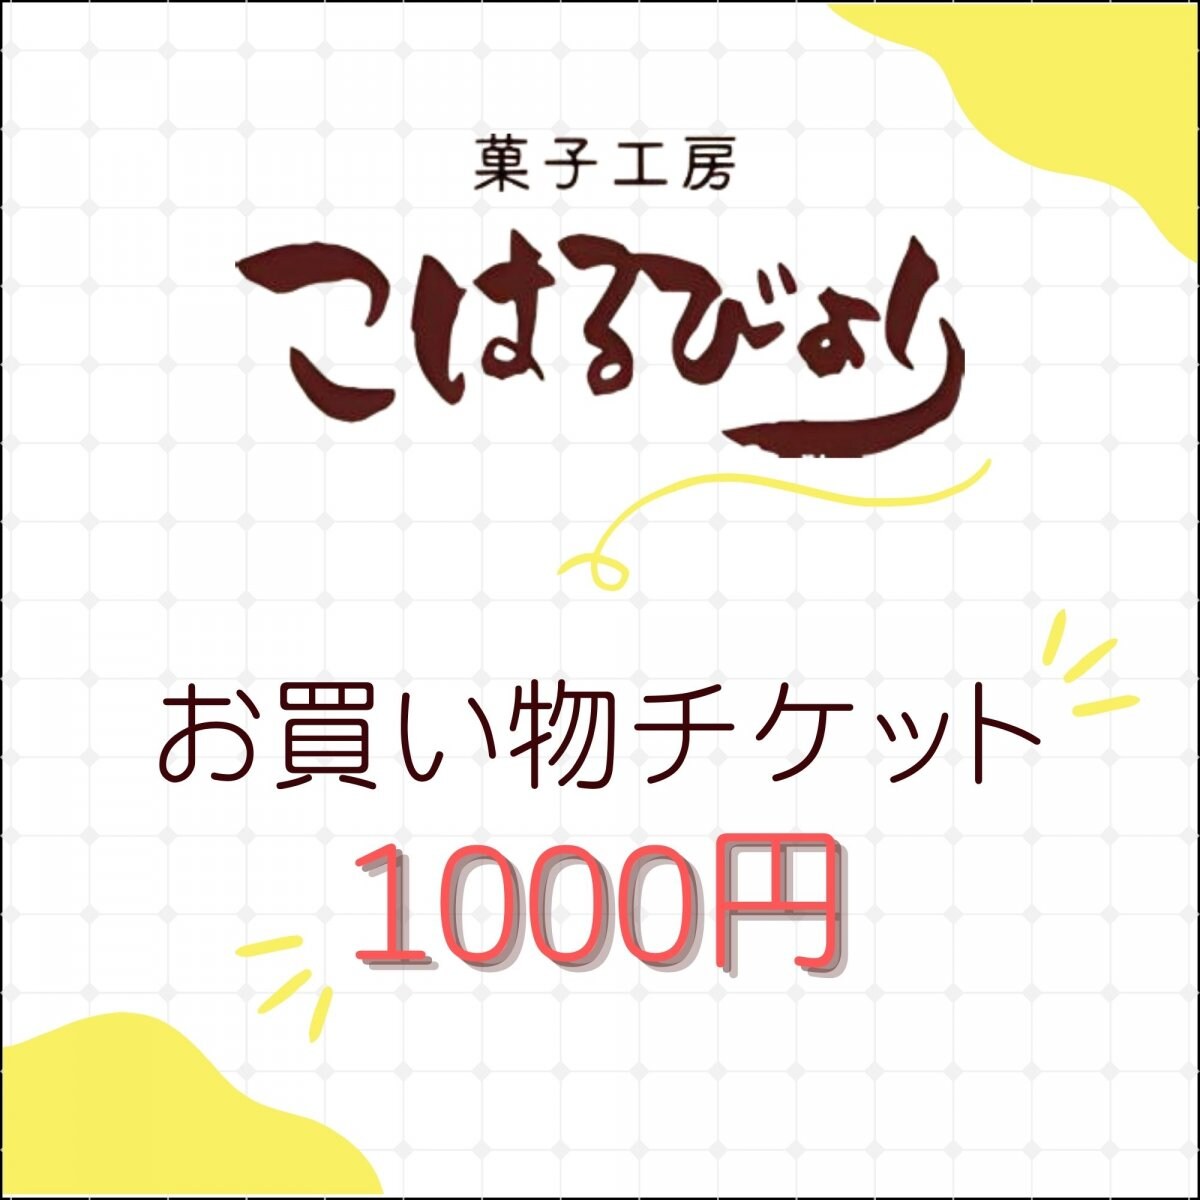 1000円お買い物チケット(菓子工房こはるびより)